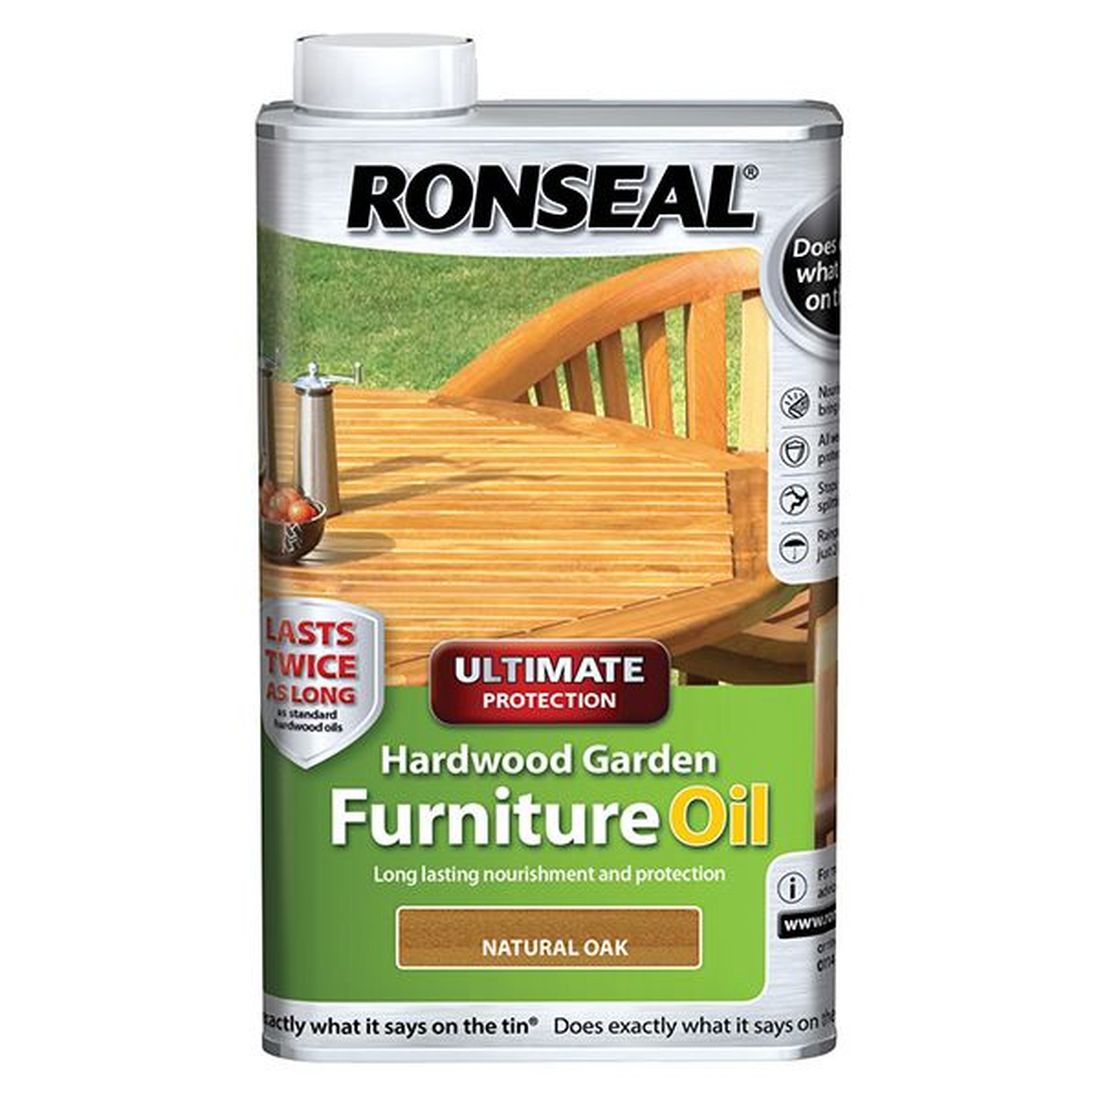 Ronseal Ultimate Protection Hardwood Garden Furniture Oil Natural Oak 1 litre           